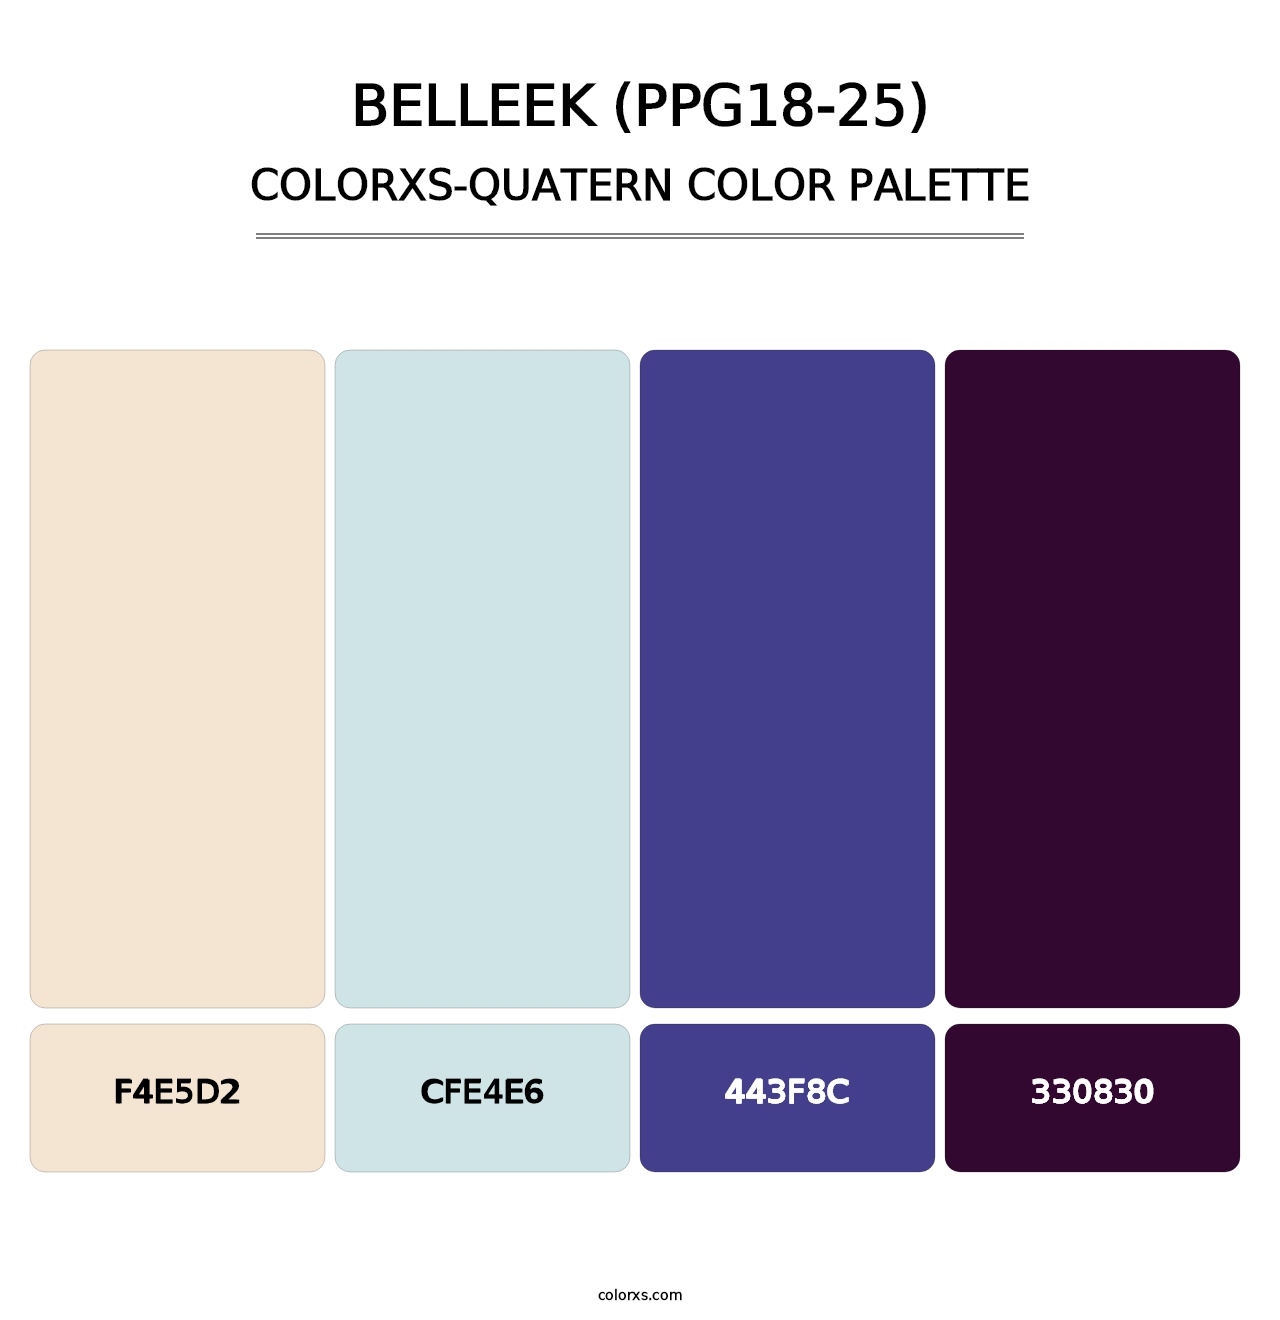 Belleek (PPG18-25) - Colorxs Quatern Palette